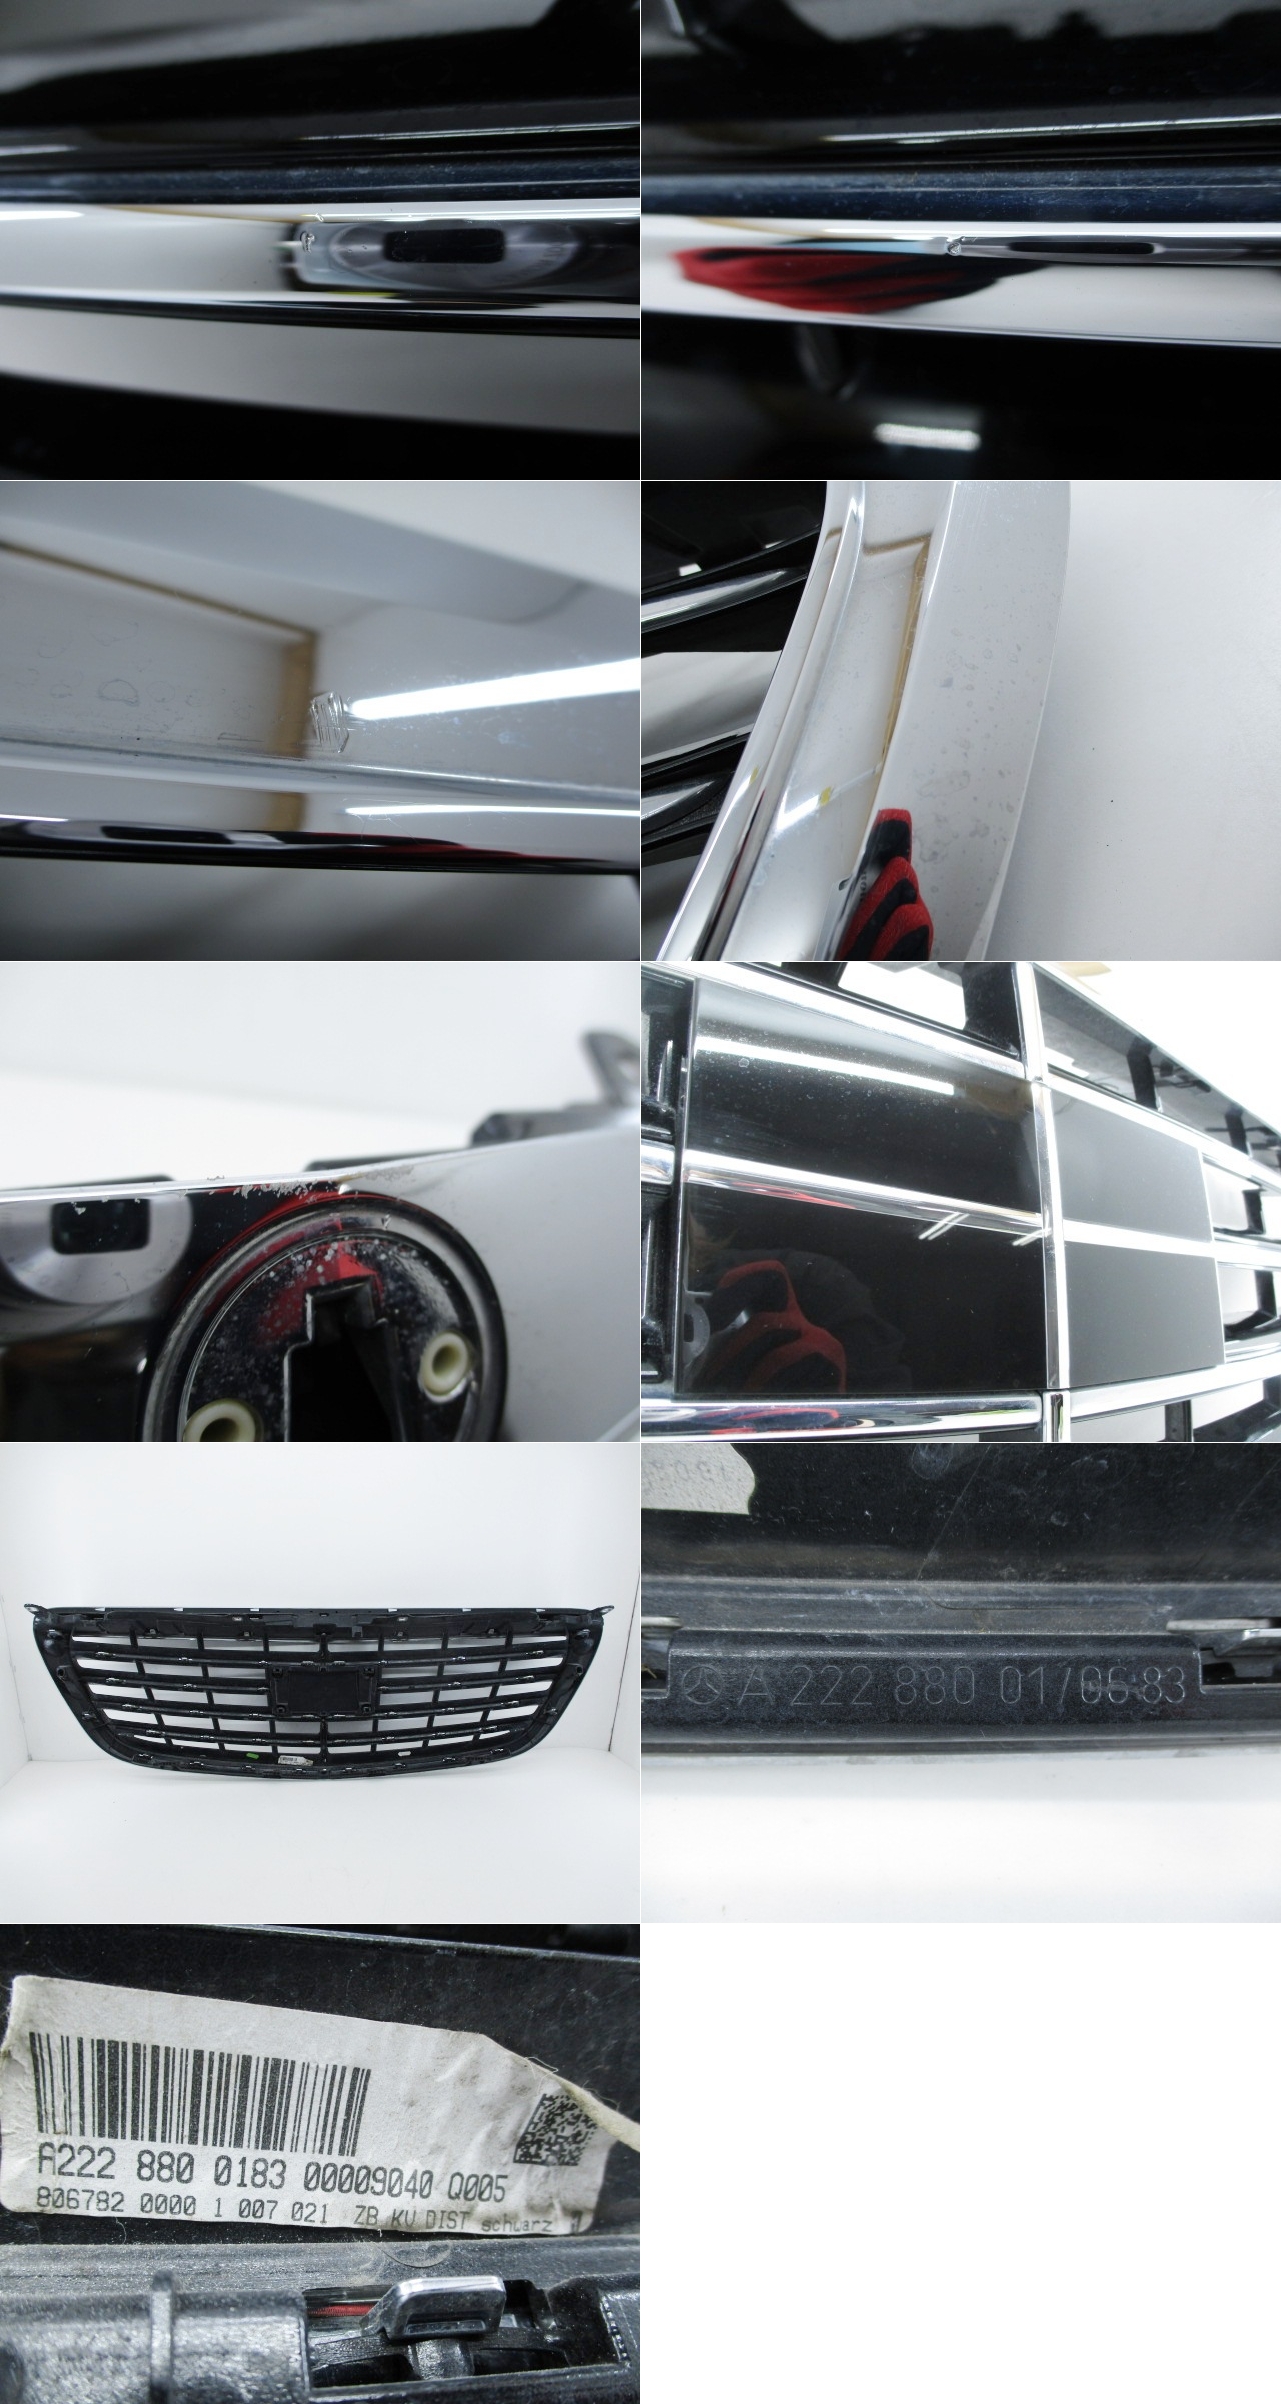 CoolBeautyフロントグリルカバー シルバー ABS樹脂製 Sクラス 2013年-2020年 ベンツ メルセデス カメラホール付き W222  AP-FG394